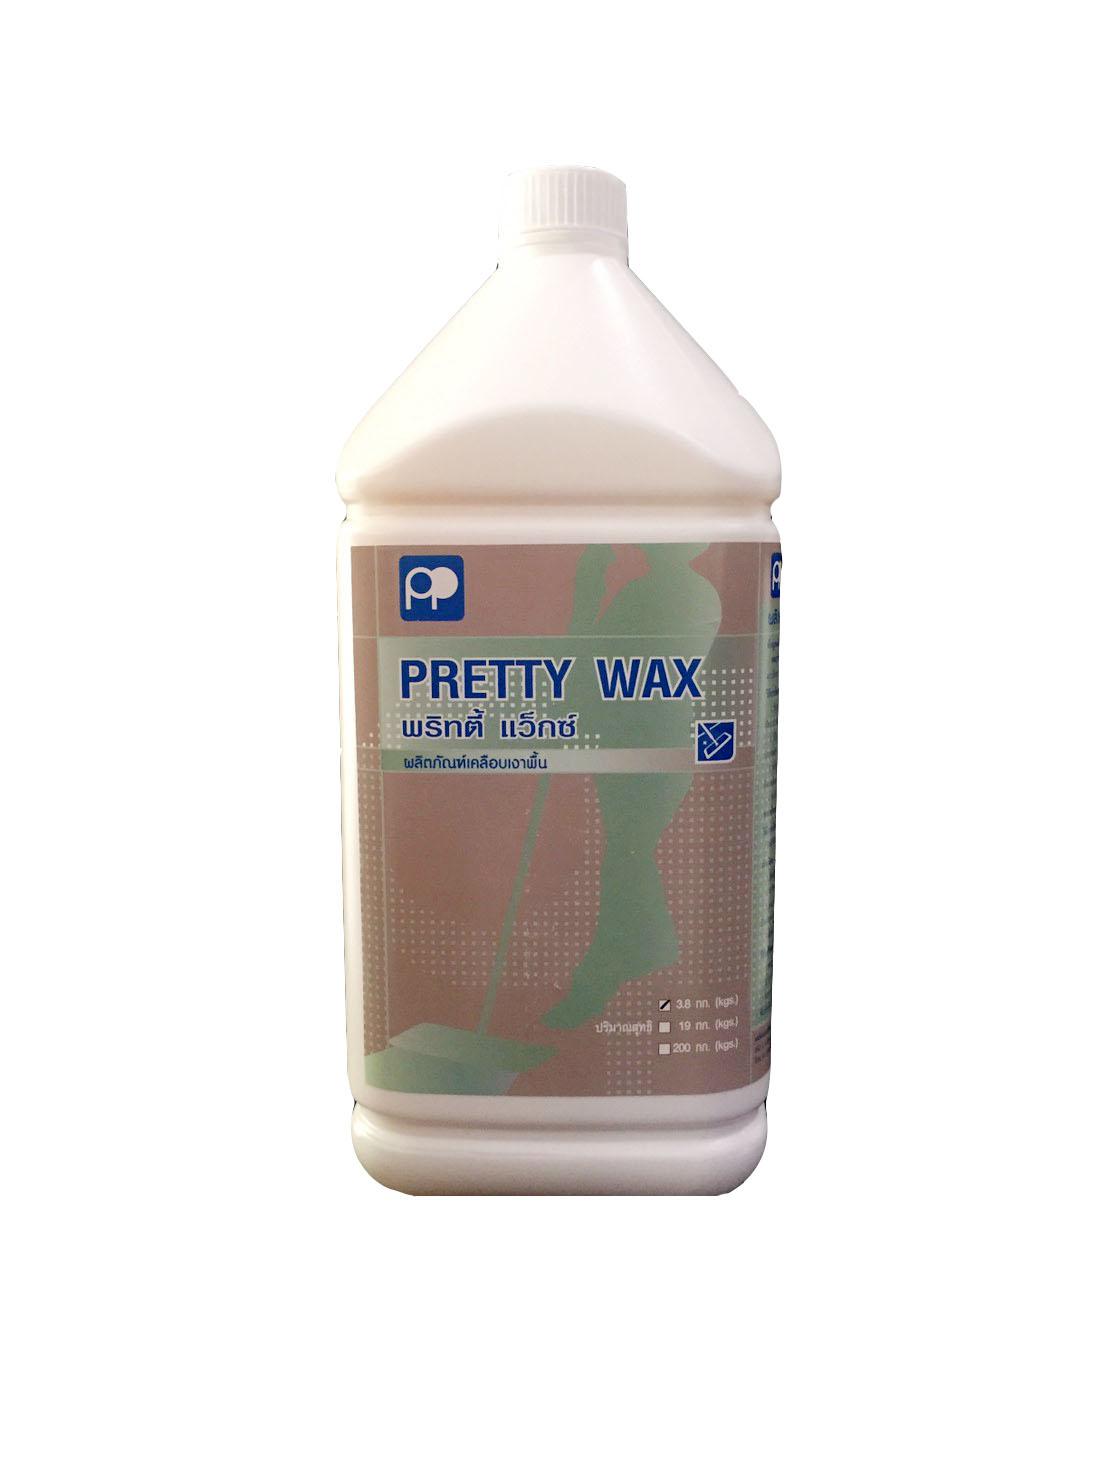 Pretty Wax - Floor Wax ผลิตภัณฑ์เคลือบเงาพื้น แว๊กซ์พื้น ชนิดให้ความเงางามสูง เกรด A  ขนาด 3.8 กก. ฟรีค่าจัดส่ง